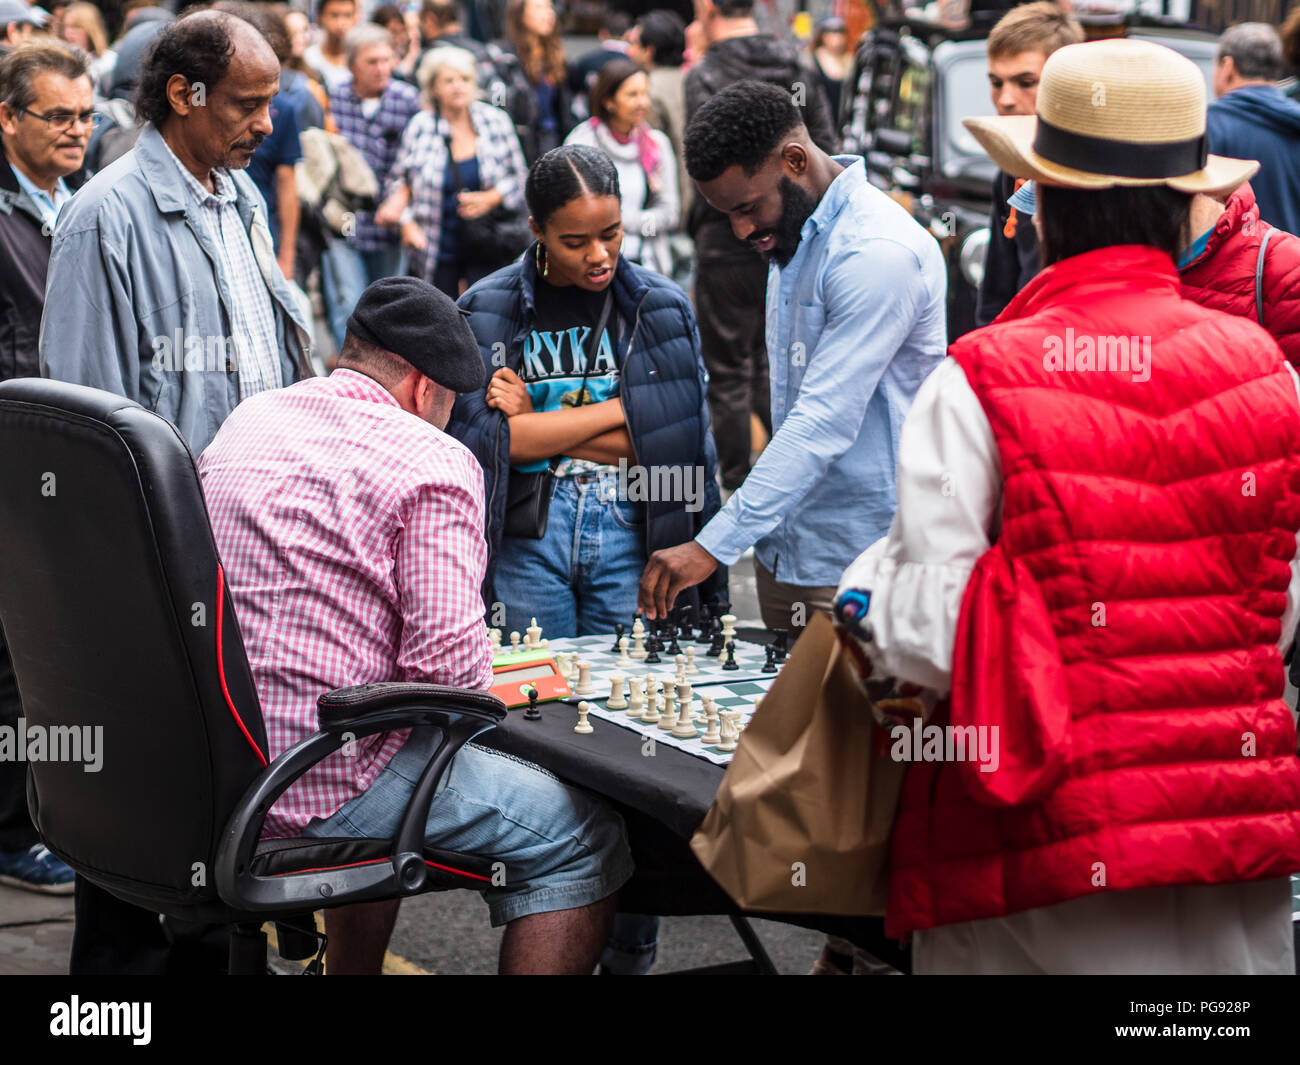 Brick Lane London Street Chess - un joueur d'échecs joue 4 matches simultanés avec les touristes et les passants dans le célèbre marché du dimanche Brick Lane de Londres Banque D'Images